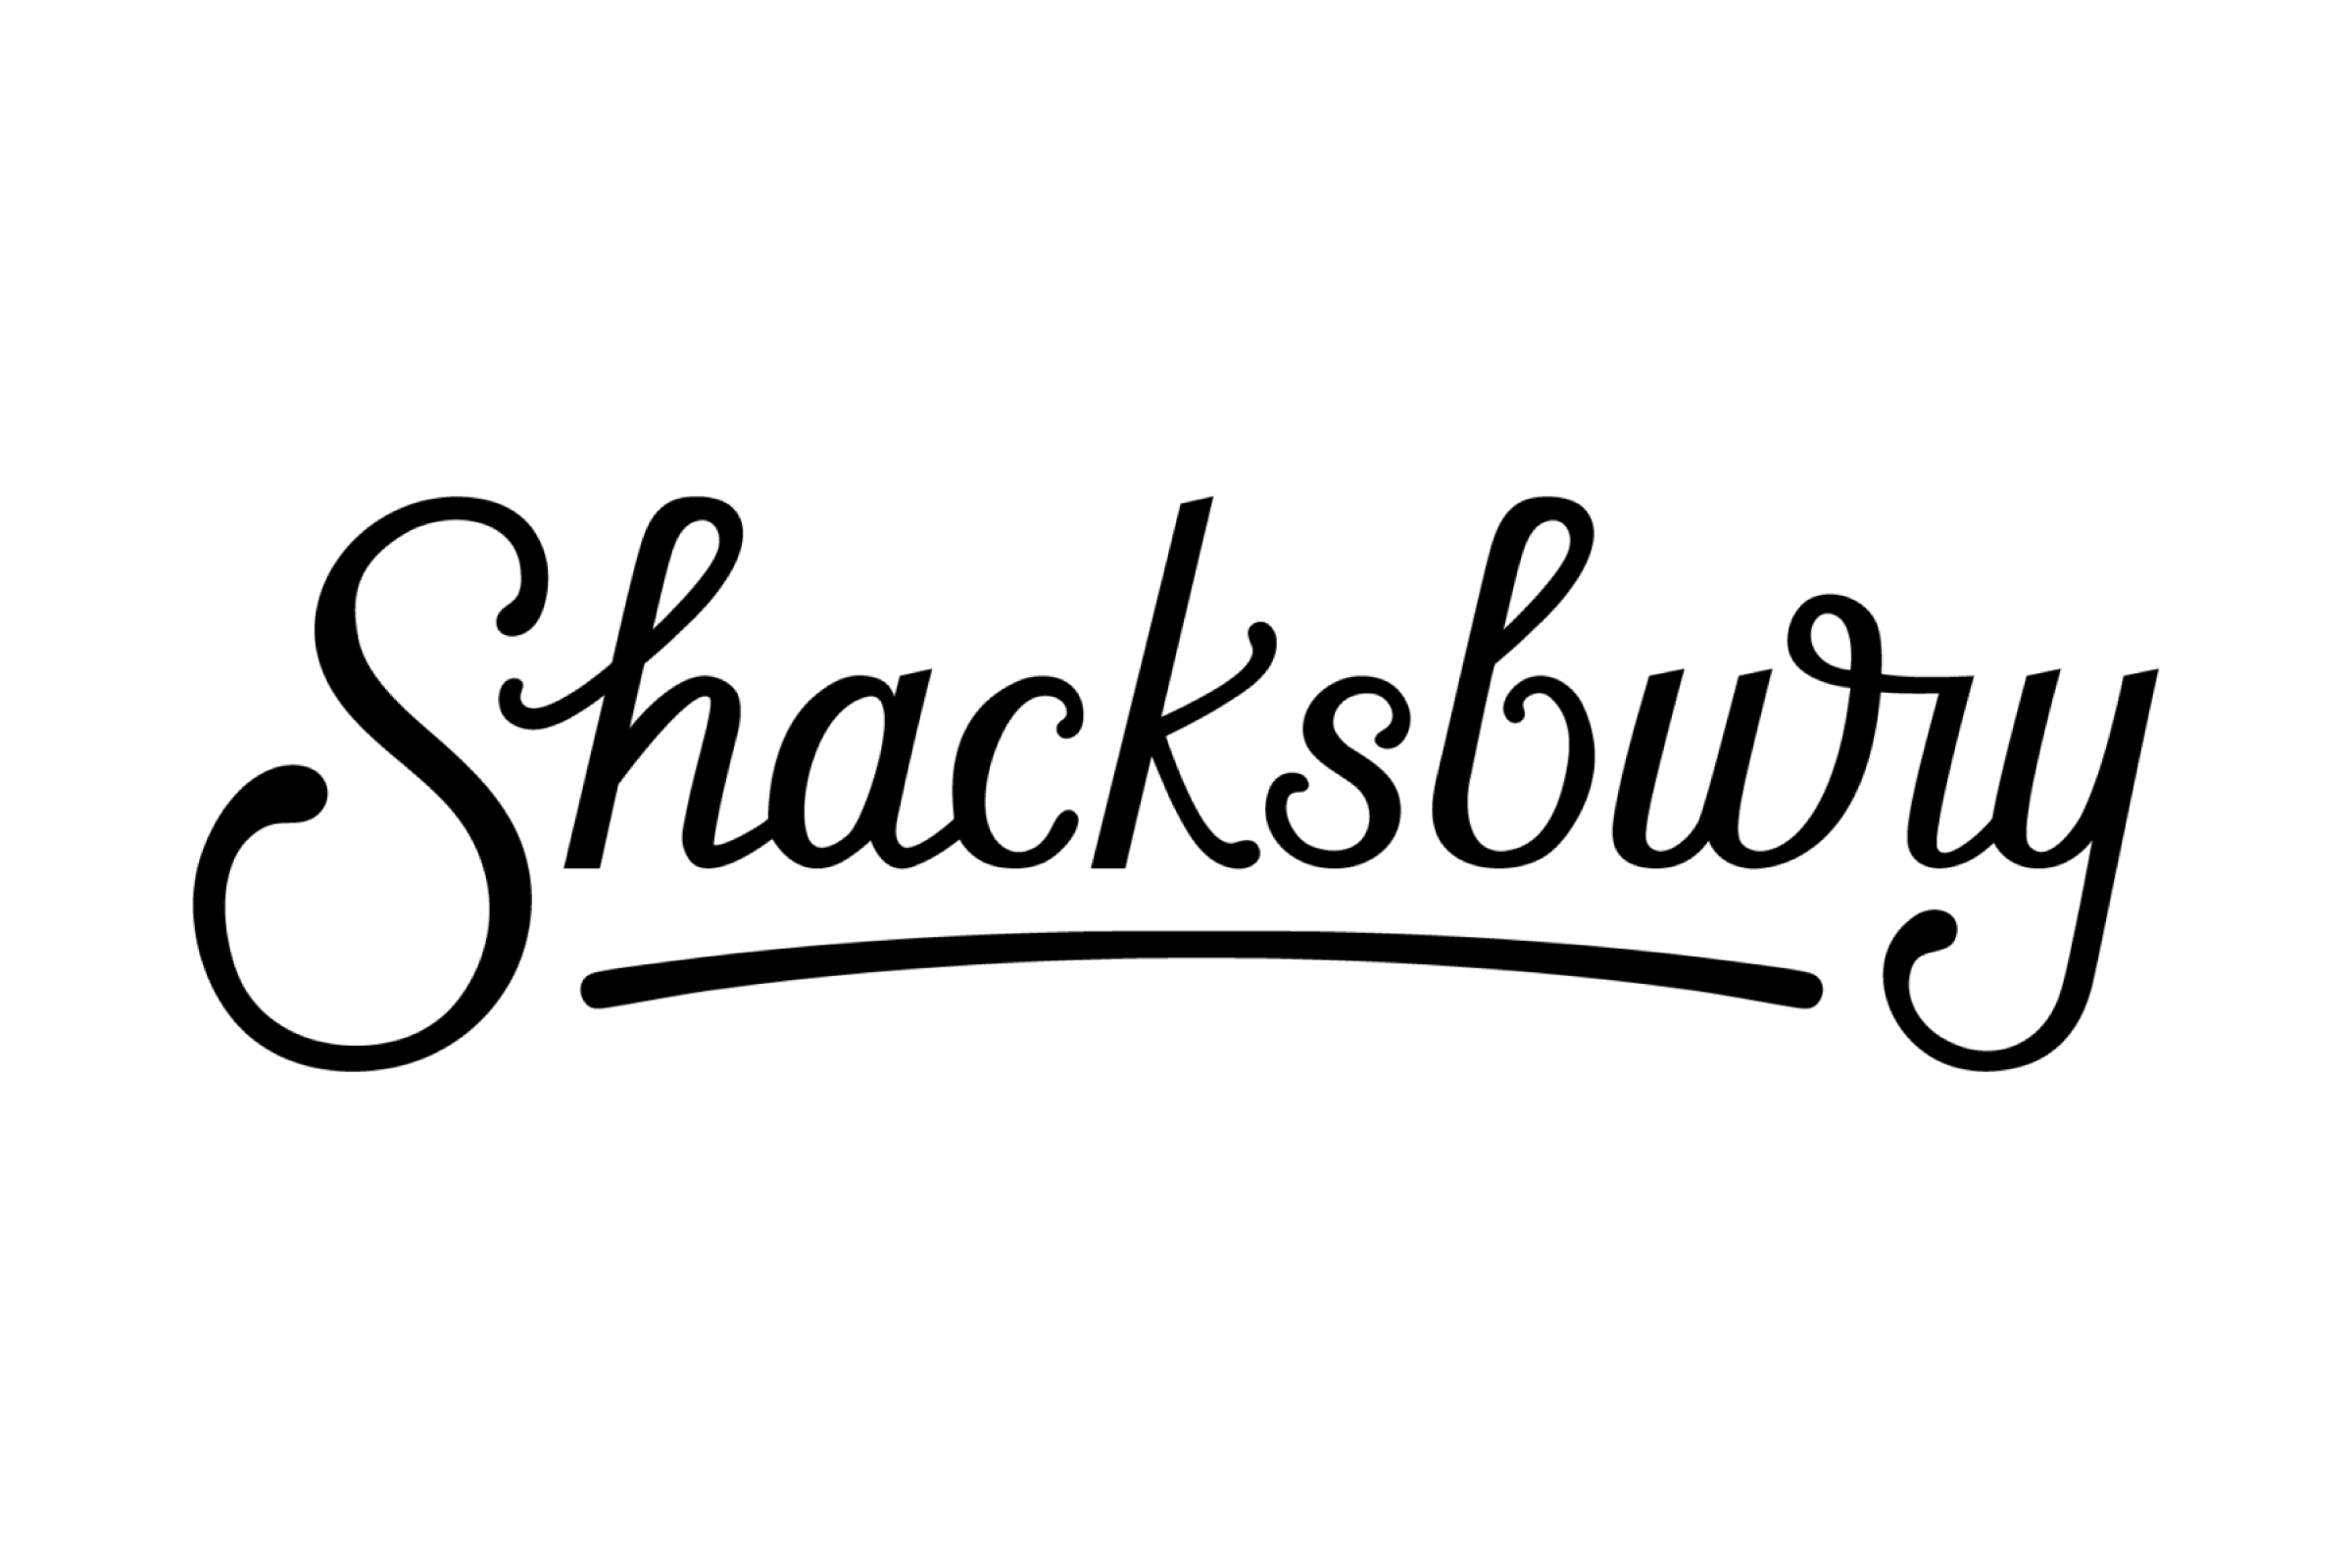 Shacksbury (Copy)